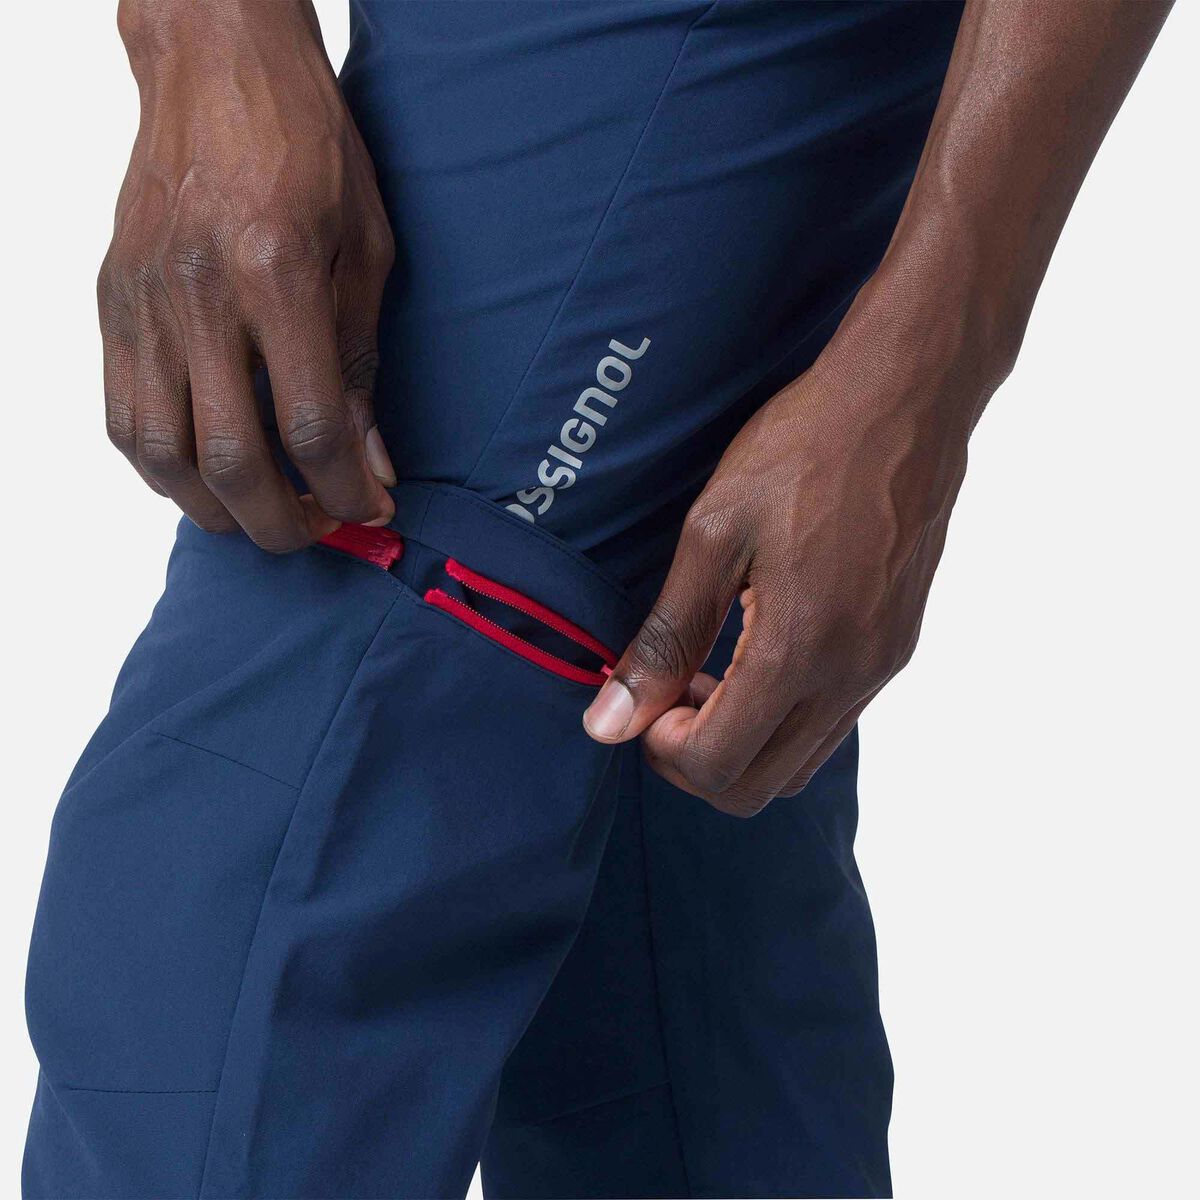 Men's Lightweight Convertible Zip-Off Pants